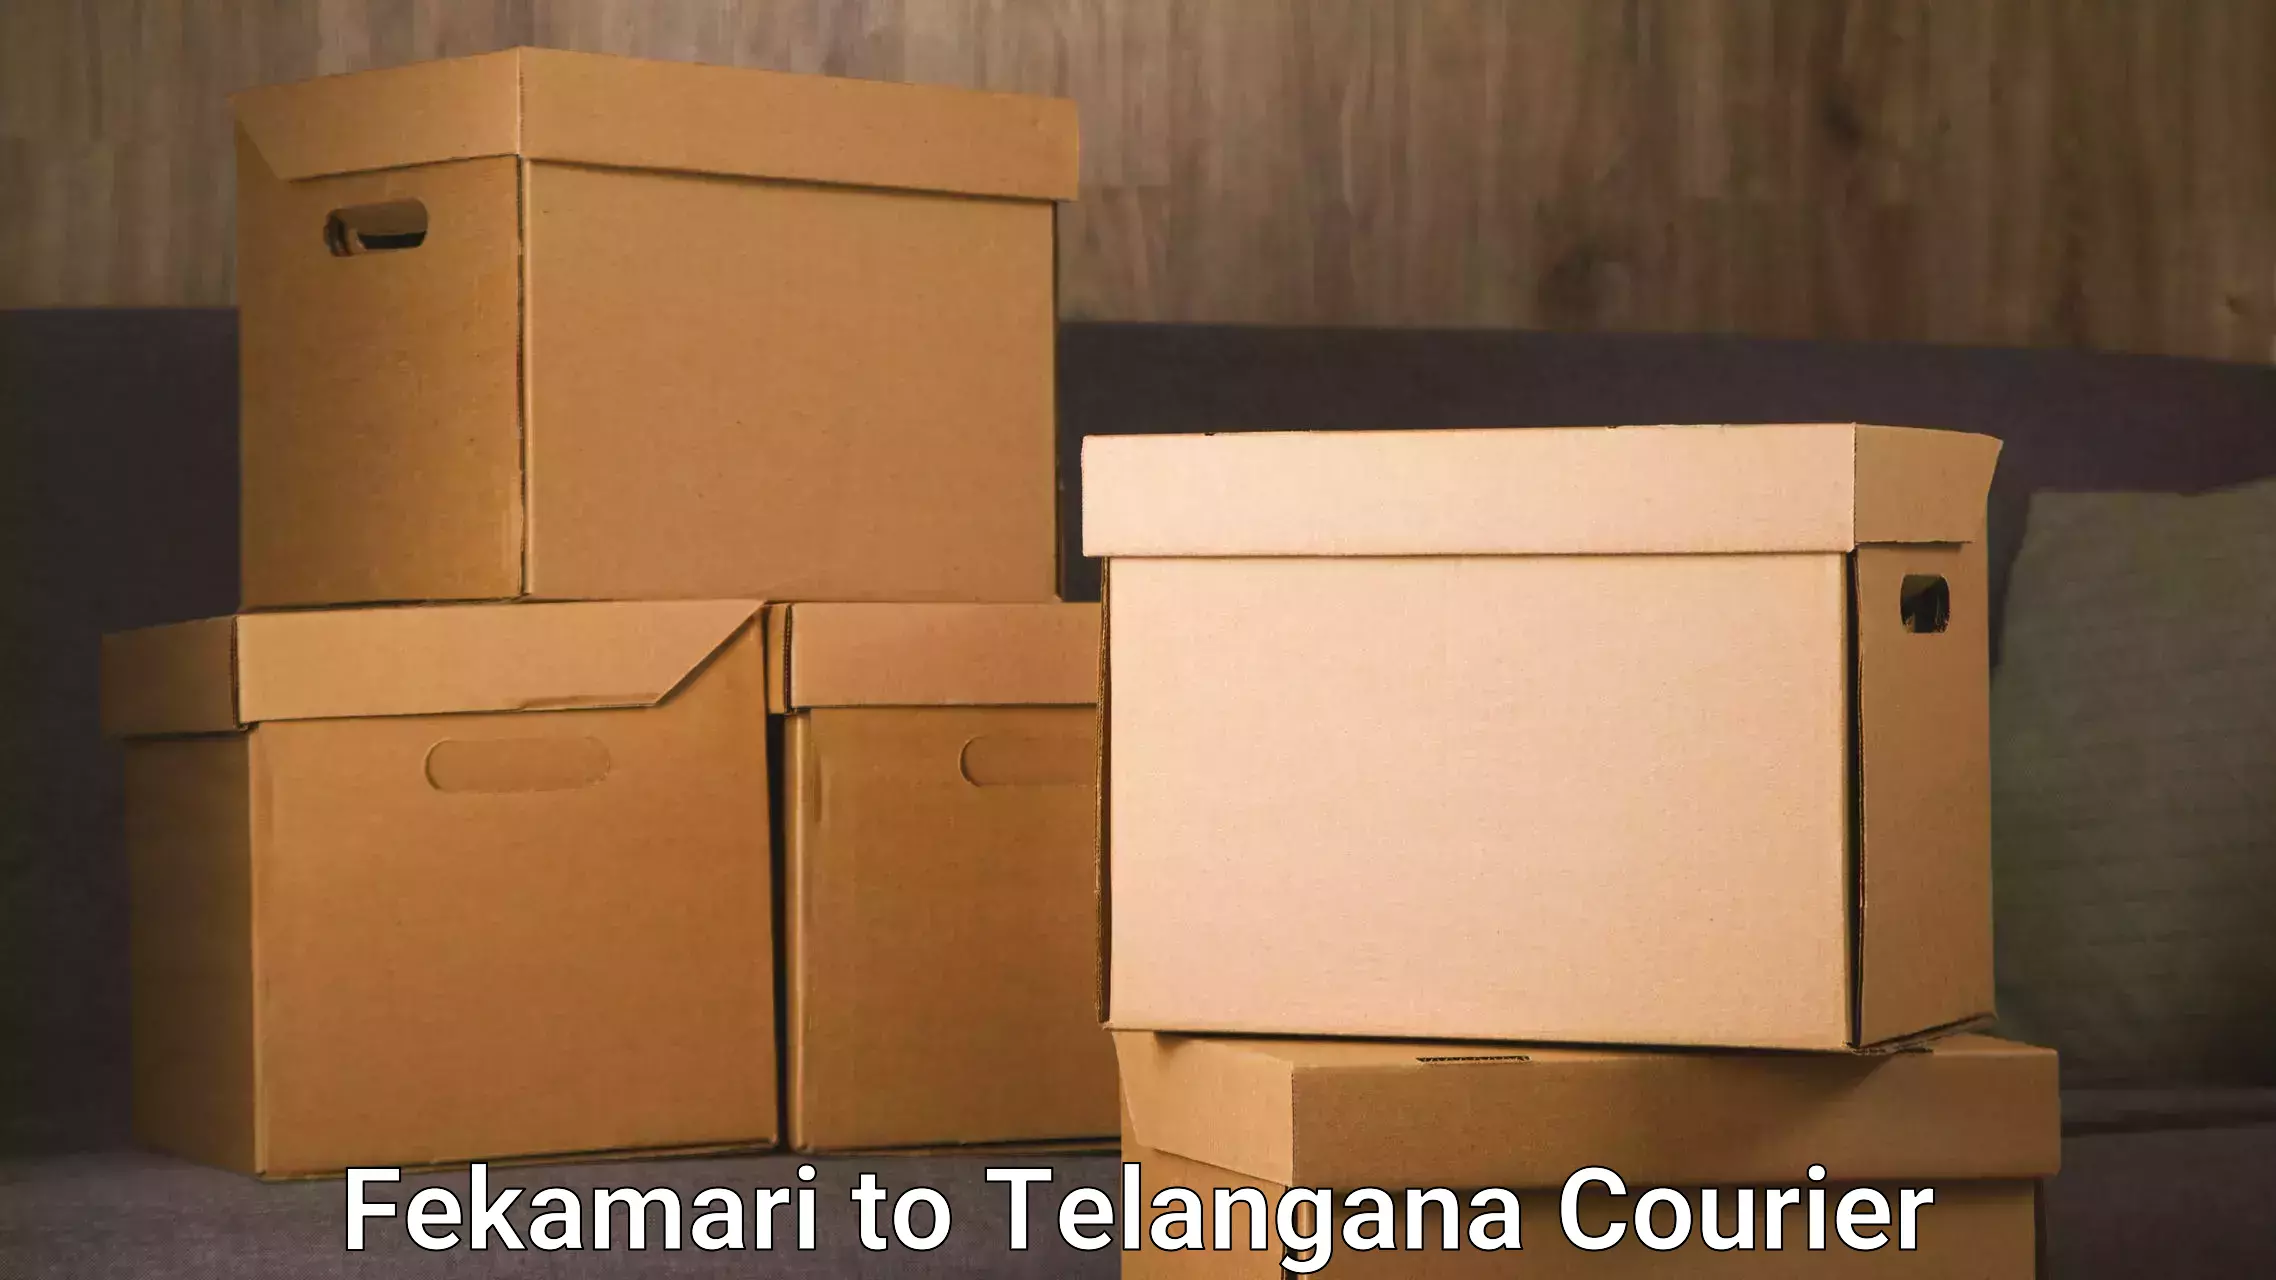 Fast shipping solutions in Fekamari to Kothakota